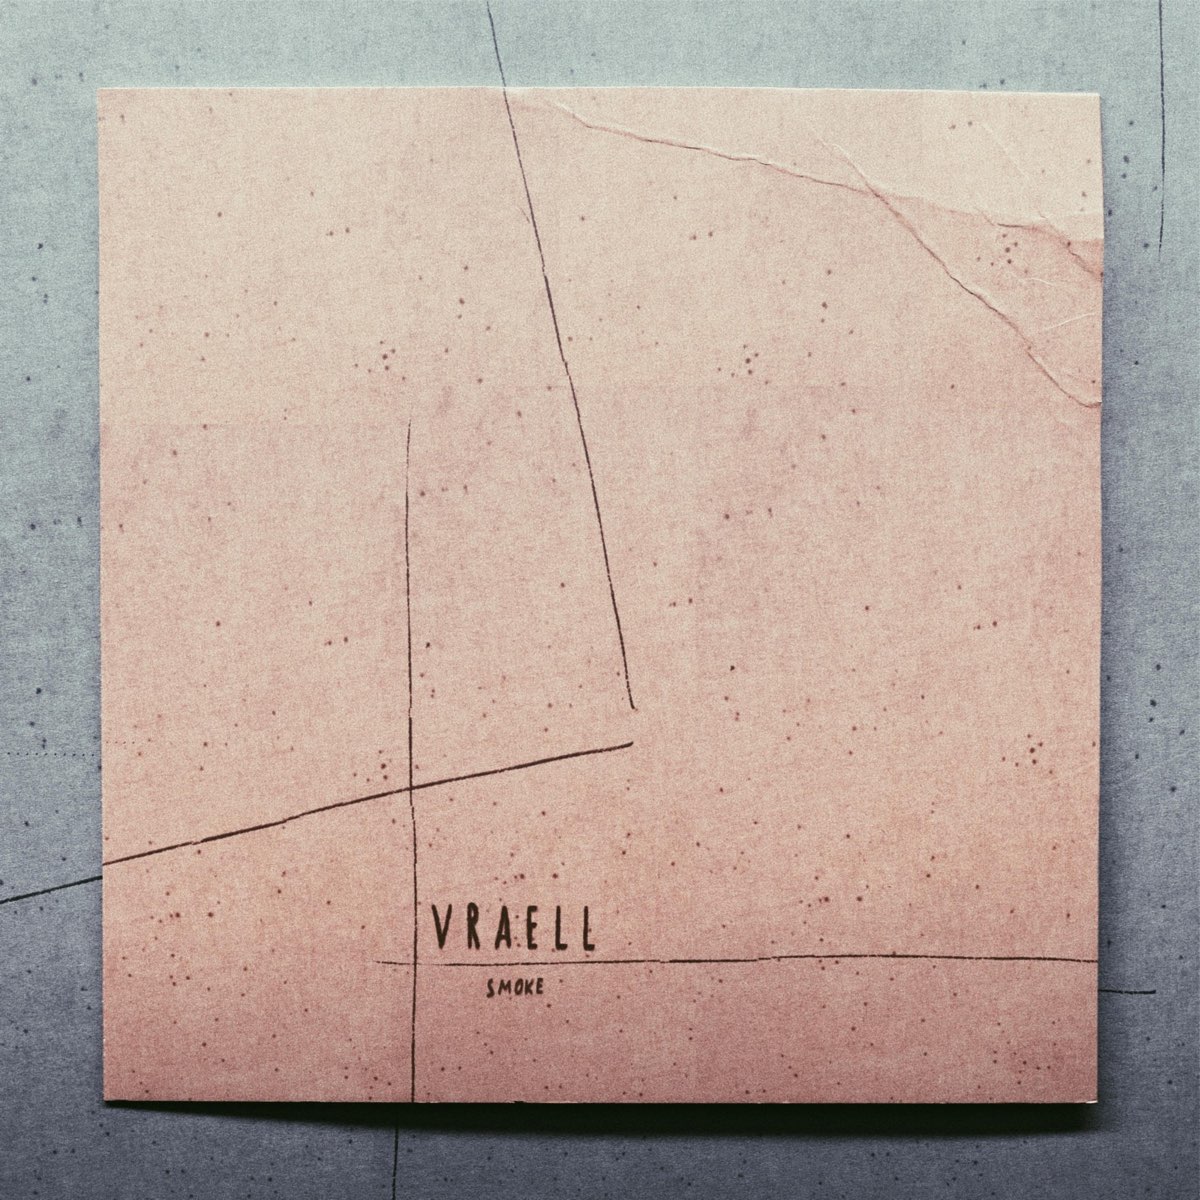 Vraell Smoke (EP) cover artwork